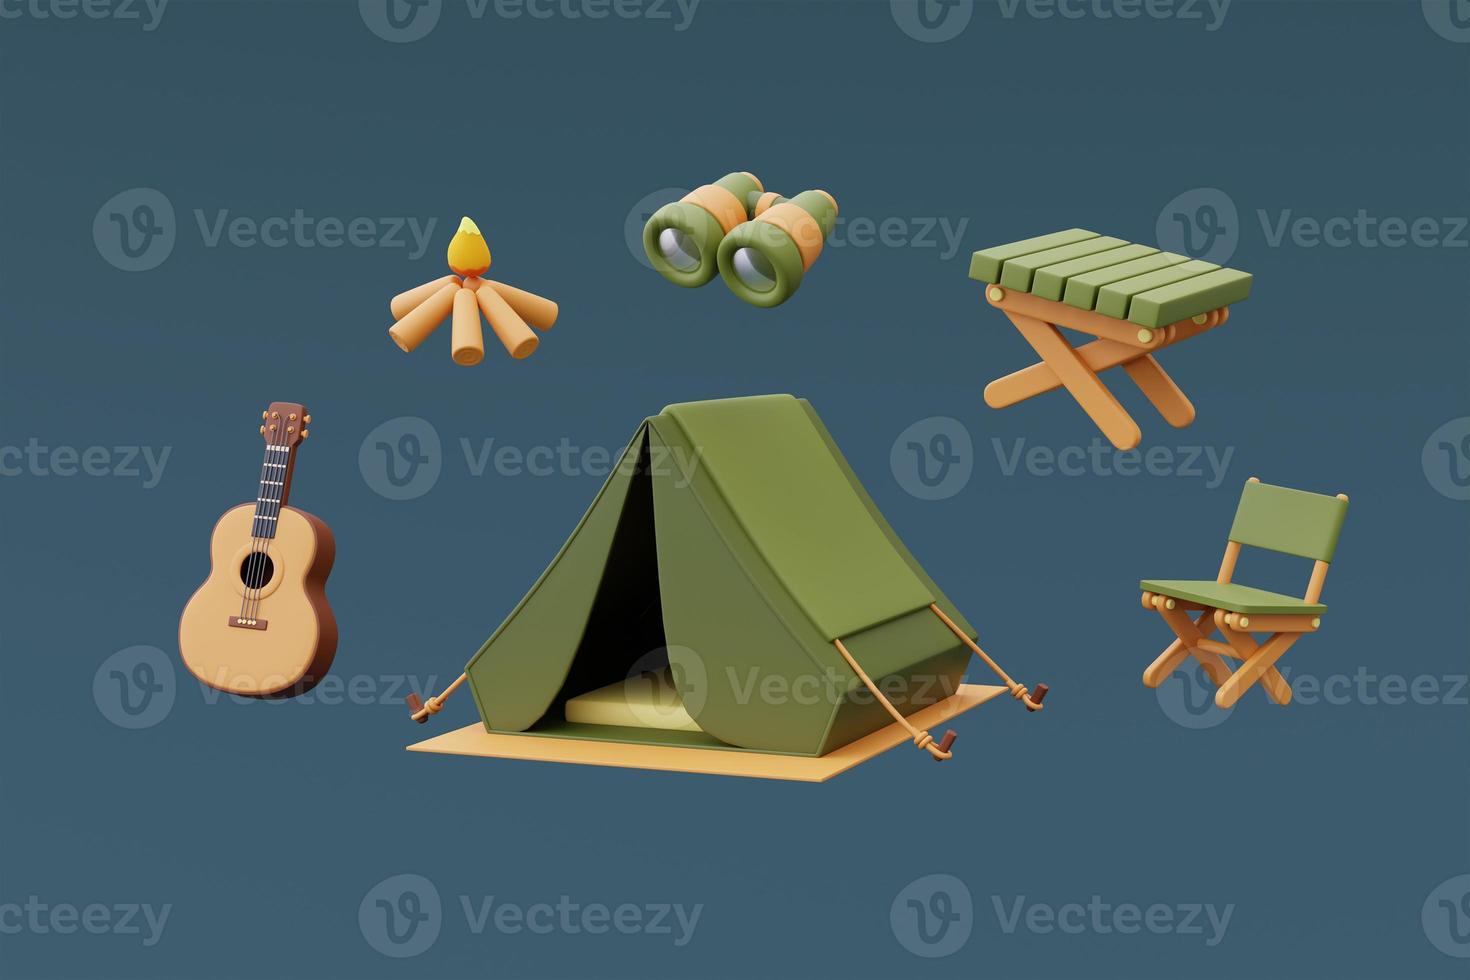 conjunto de equipamentos de camping com tenda turística, mochila, lanterna, mesa de madeira, binóculos isolados sobre fundo azul, férias de férias concept.minimal style.3d renderização. foto